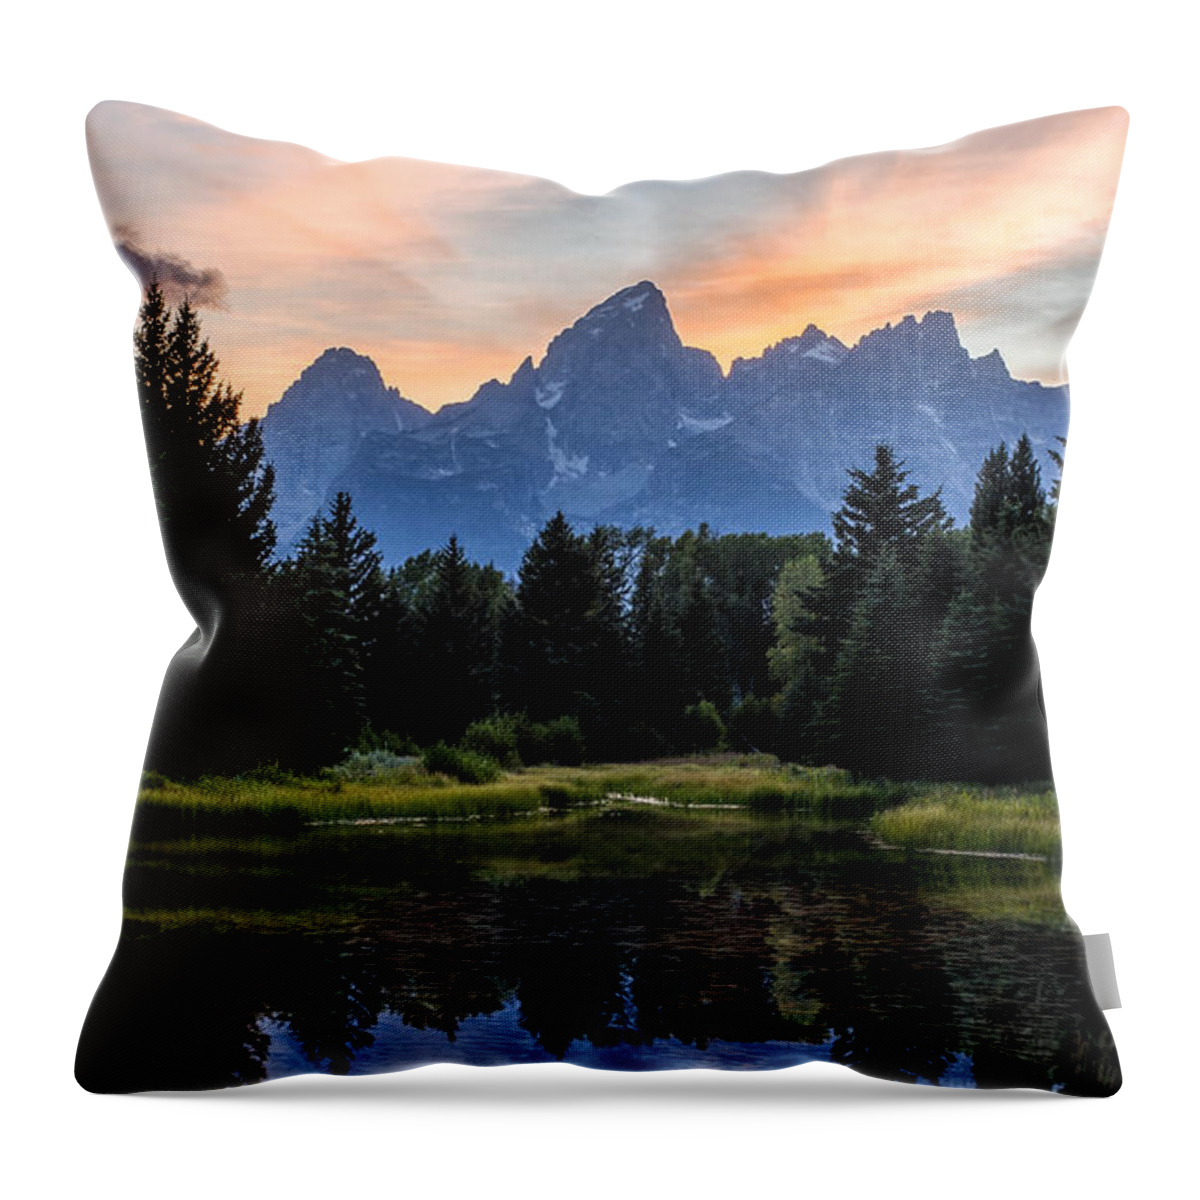 Grand Teton National Mpark Throw Pillow featuring the photograph Schwabacher's Landing Sunset by Matt Hammerstein